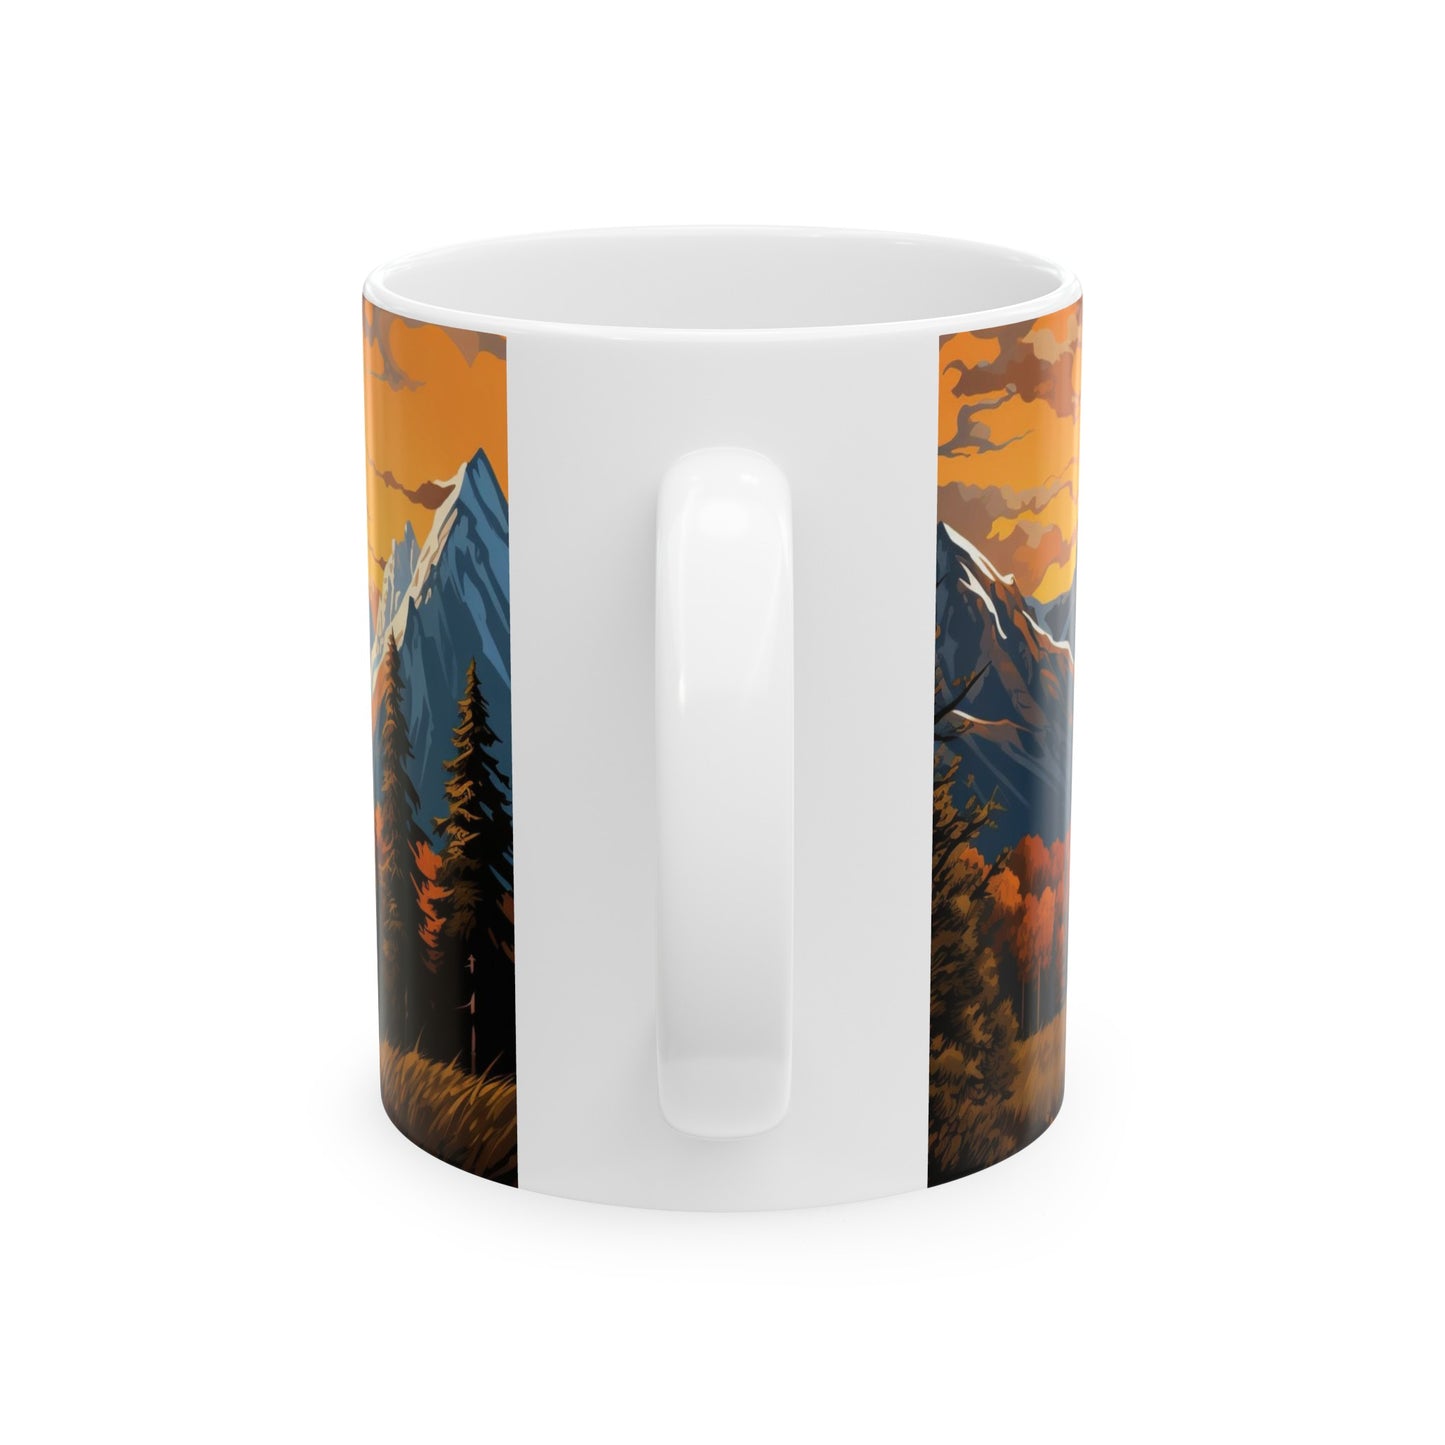 Grand Teton National Park Mug | White Ceramic Mug (11oz, 15oz)